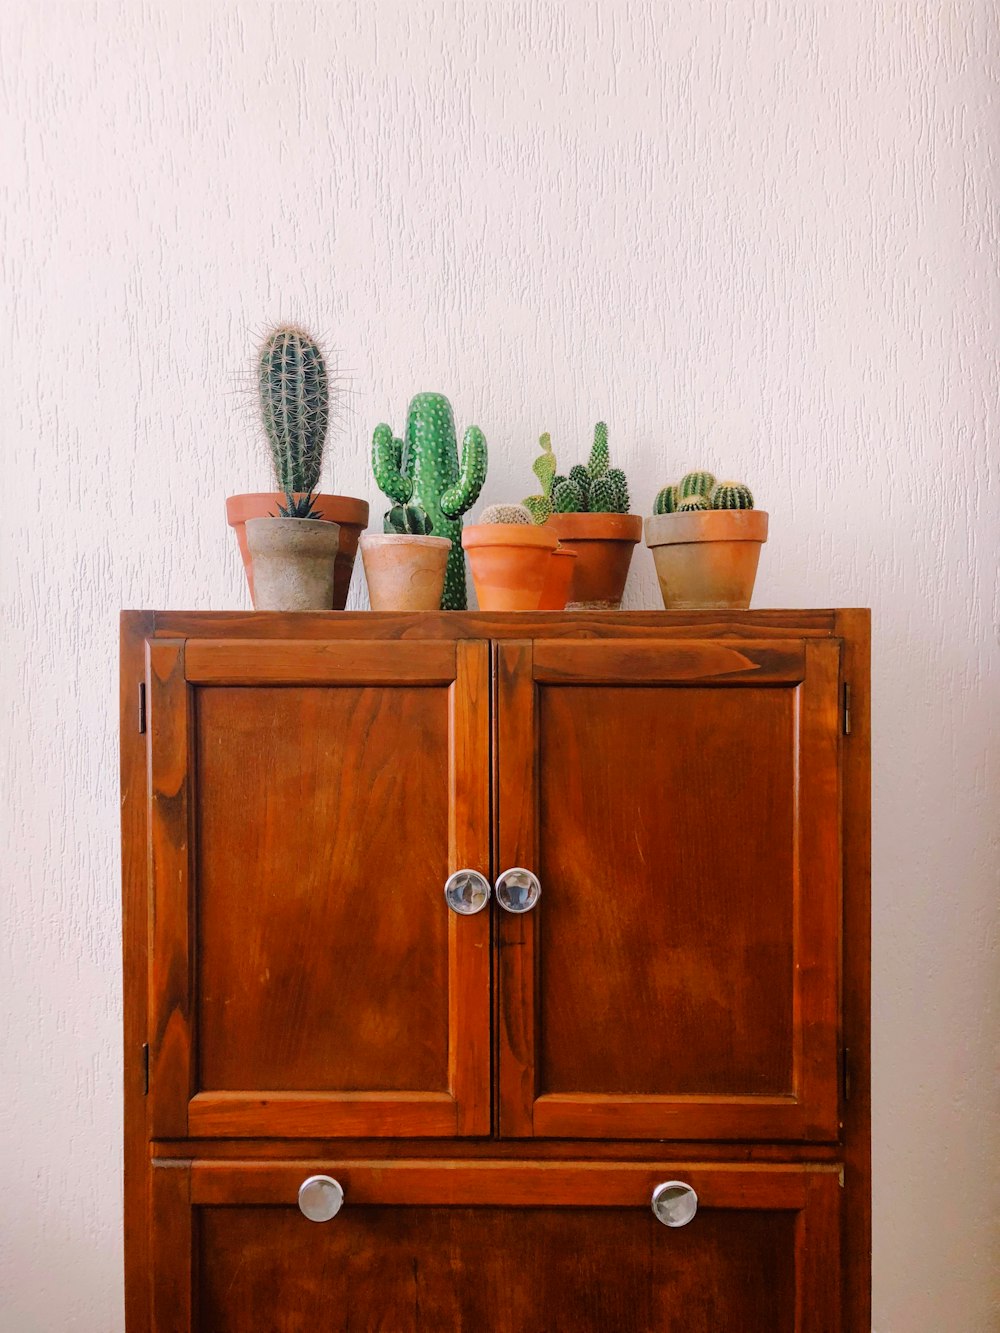 Planta de cactus verde en gabinete de madera marrón